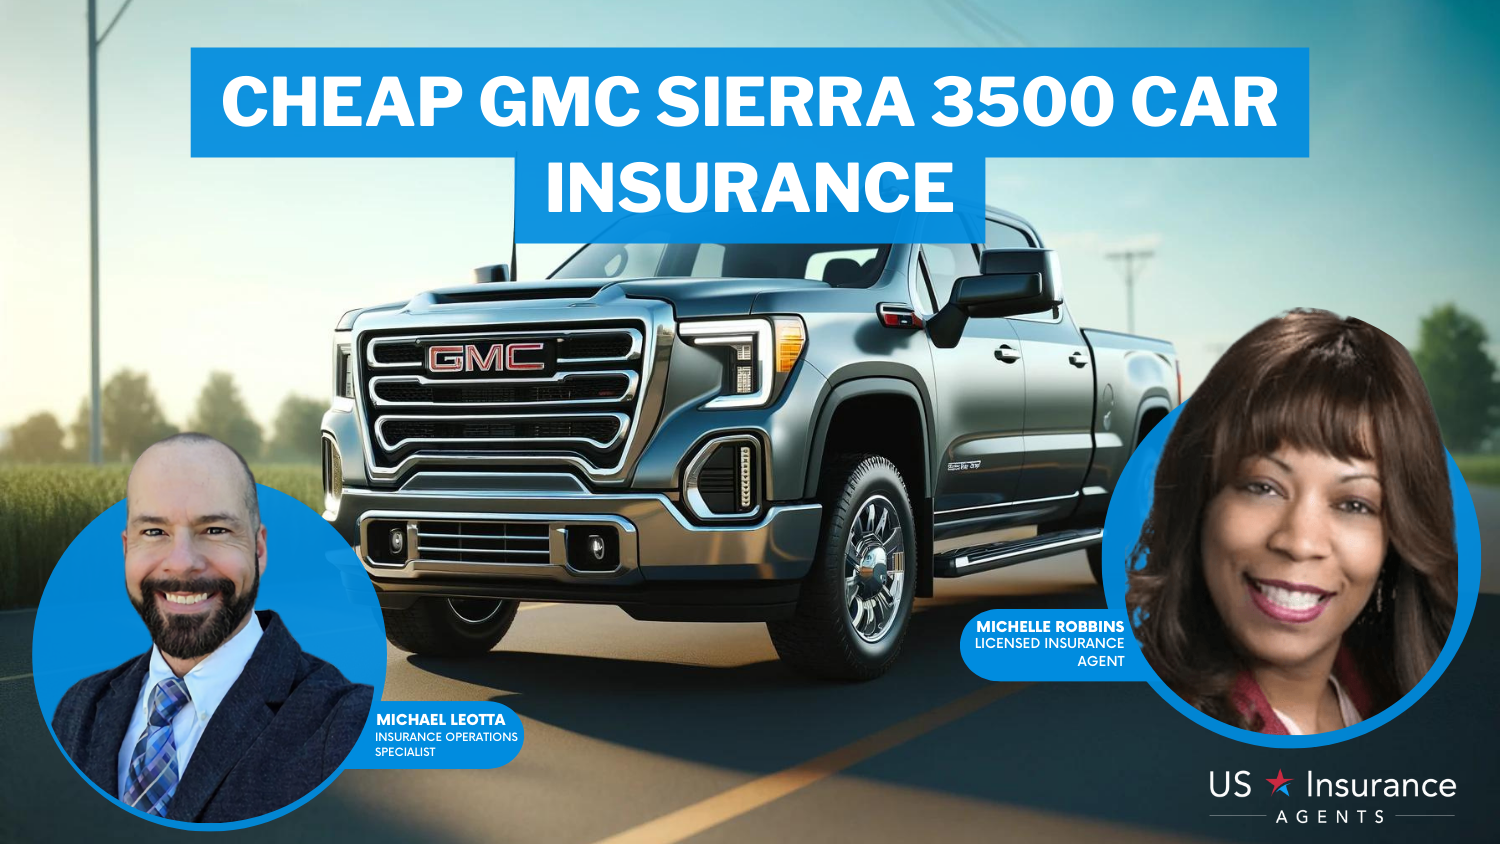 Cheap GMC Sierra 3500 Car Insurance: Erie, USAA, and State Farm